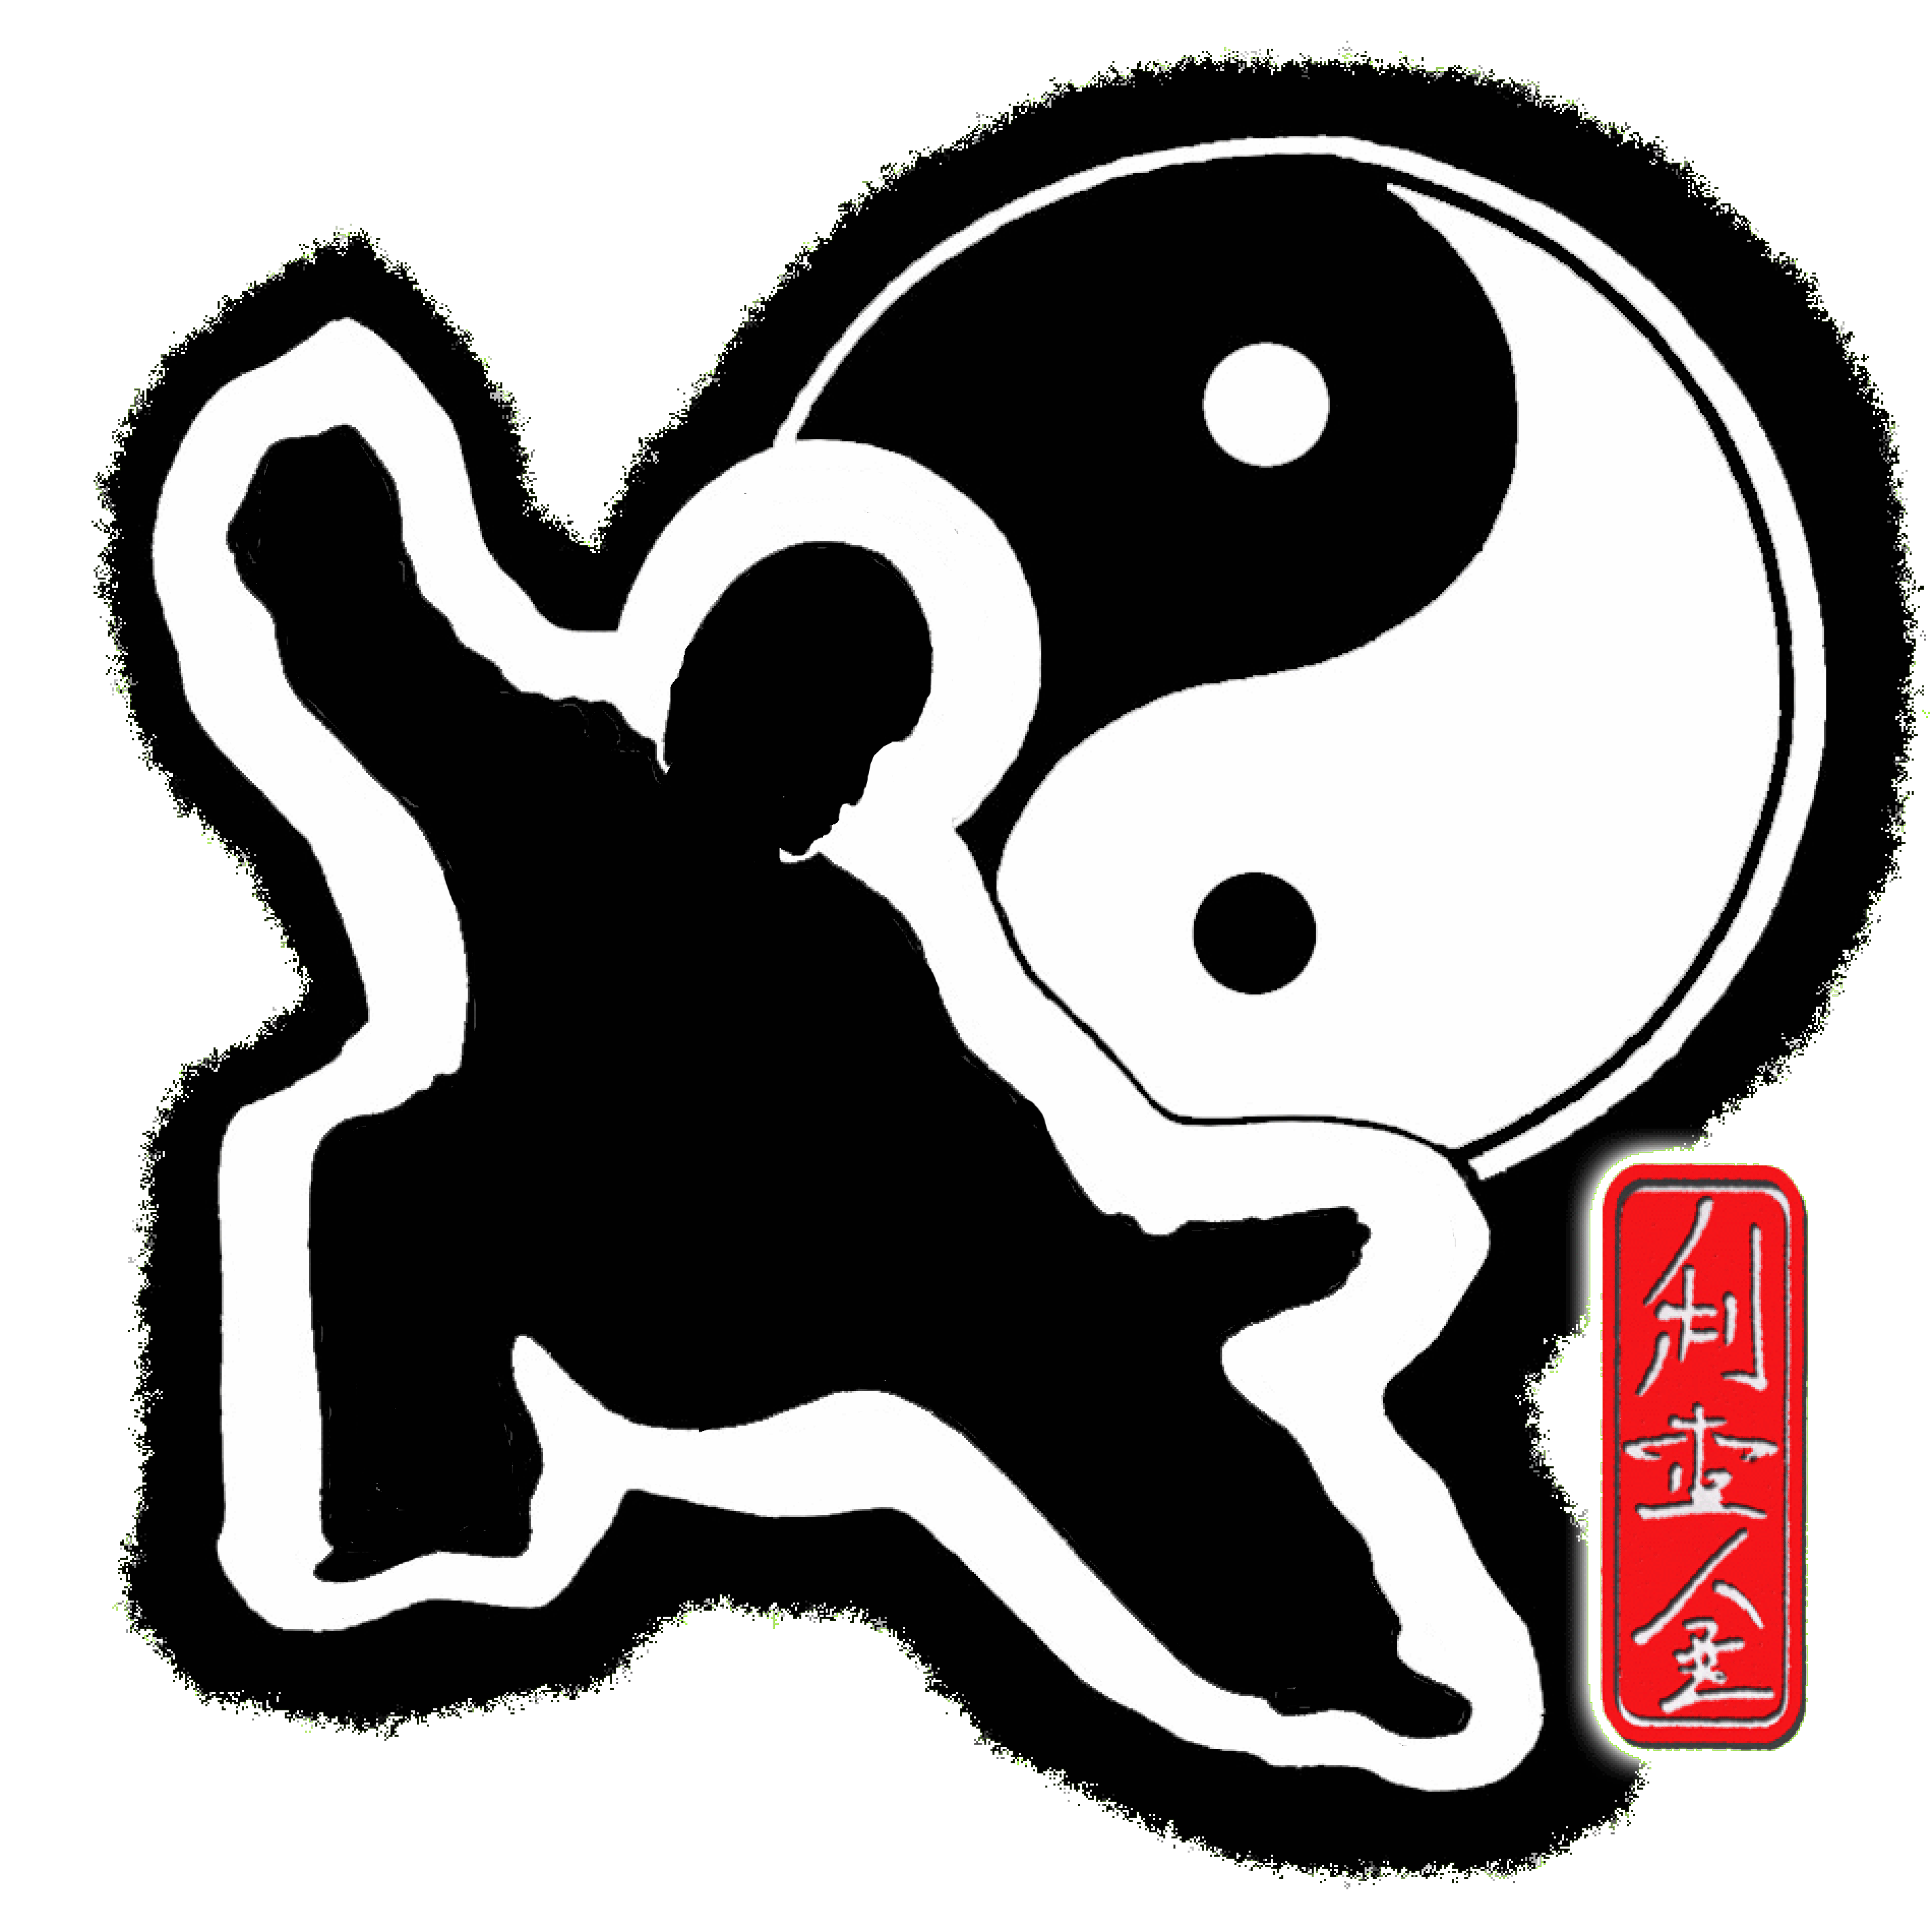 Mieir King's Tai Chi Chi Kung Chinese Wand in Lakewood California logo